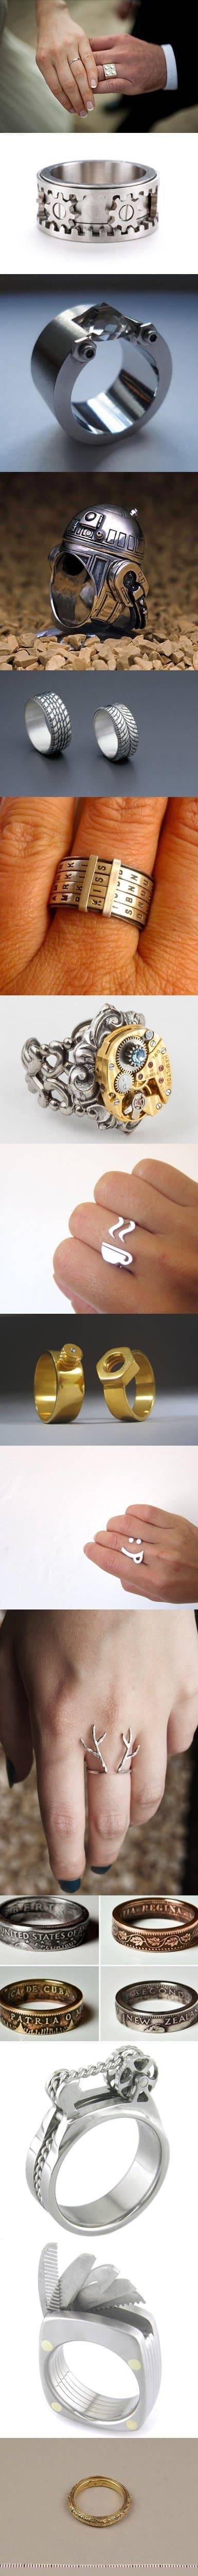 특이한 반지 디자인.jpg